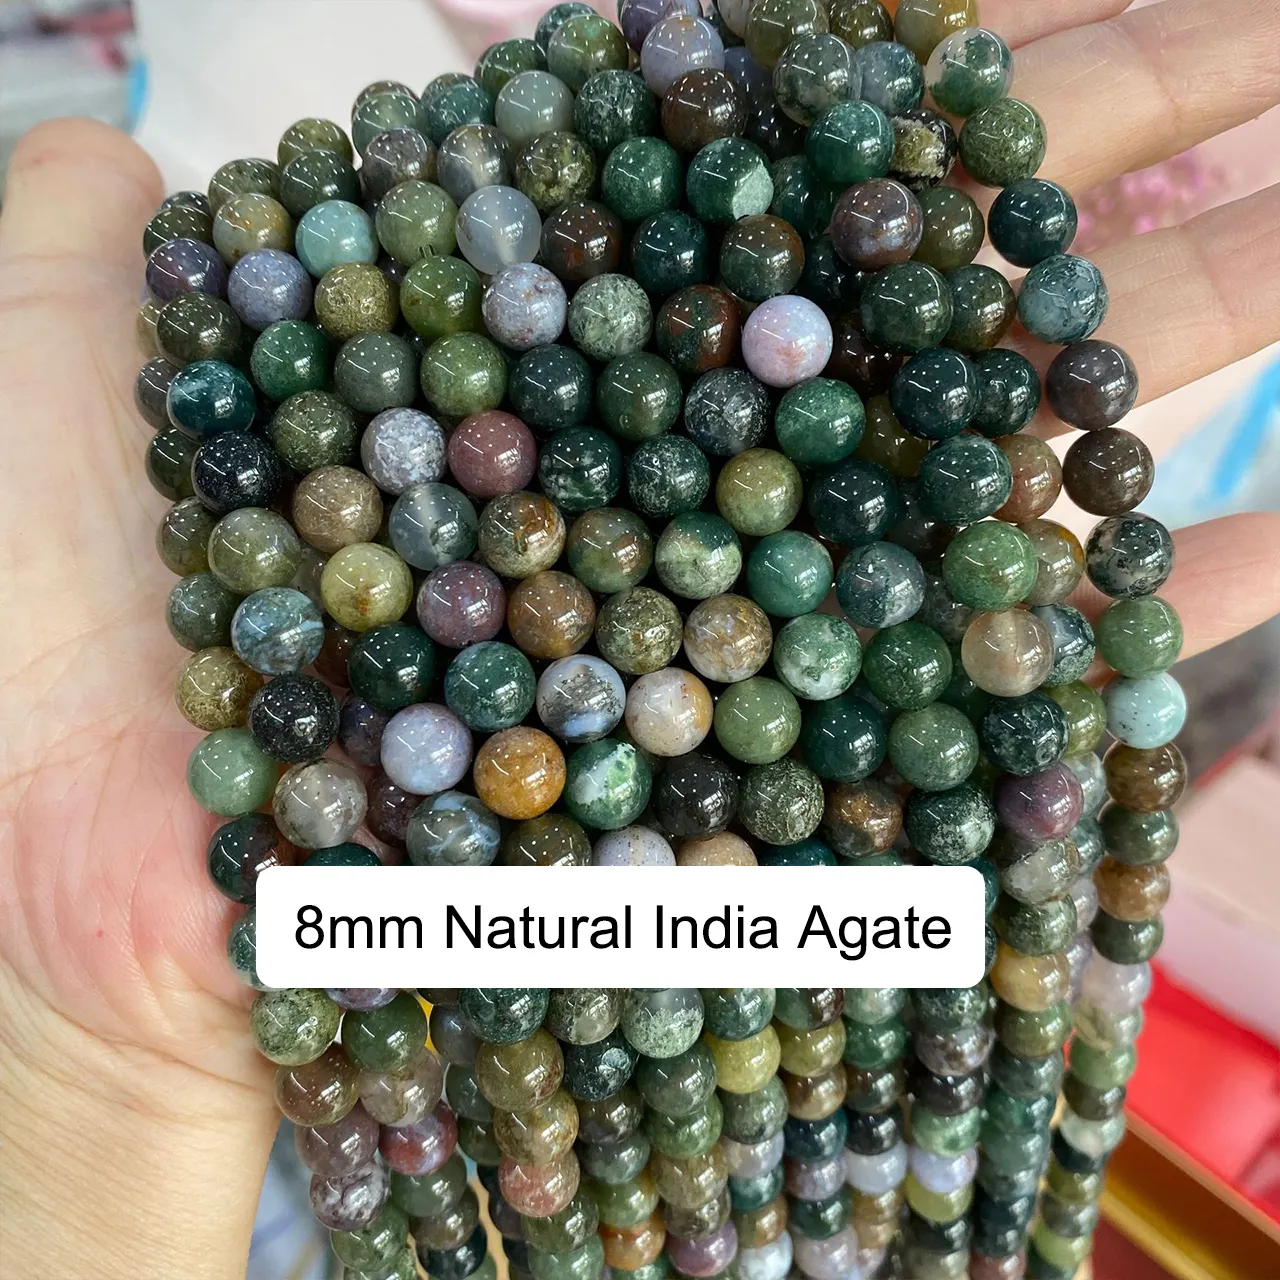 Bestone solto redondo natural polido pedra preciosa contas de pedra preciosa indiana agate para fabricação de jóias